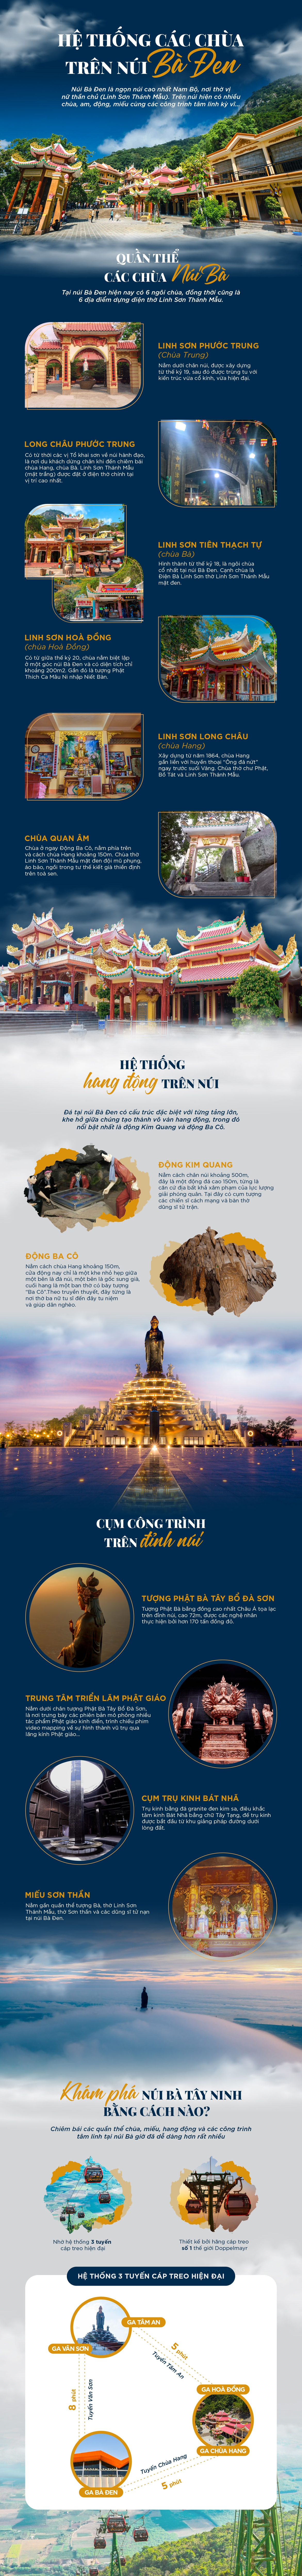 Khám phá hệ thống các chùa trên “nóc nhà Nam Bộ”